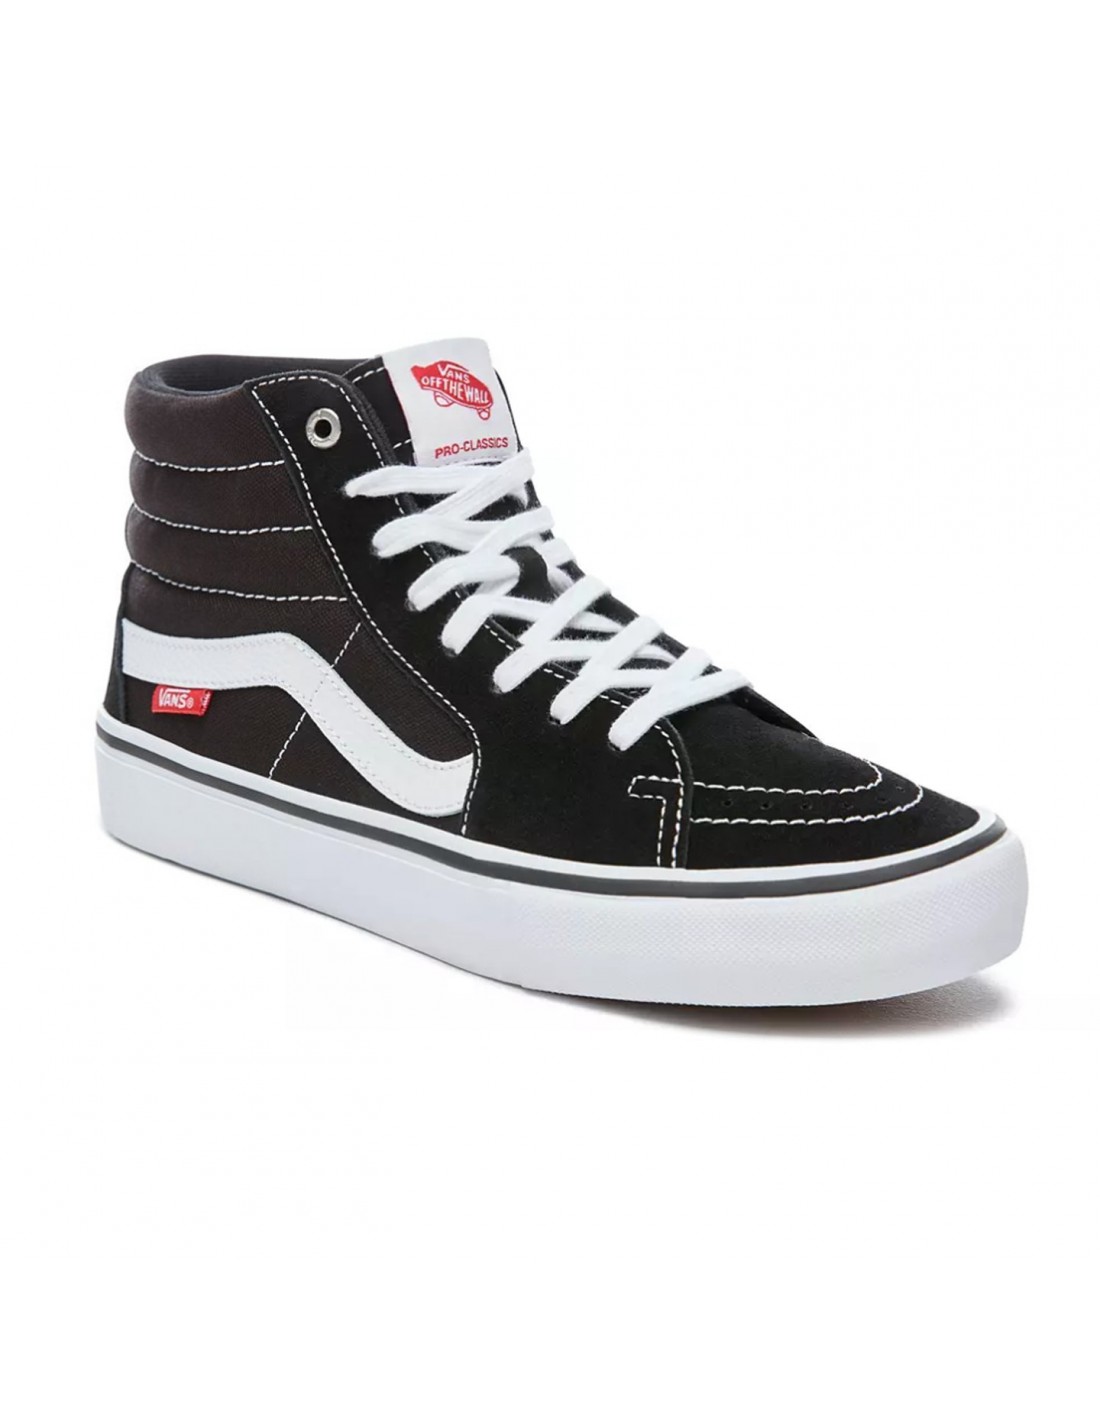 Vans Sk8-Hi Pro - Black White - Skate Shoes